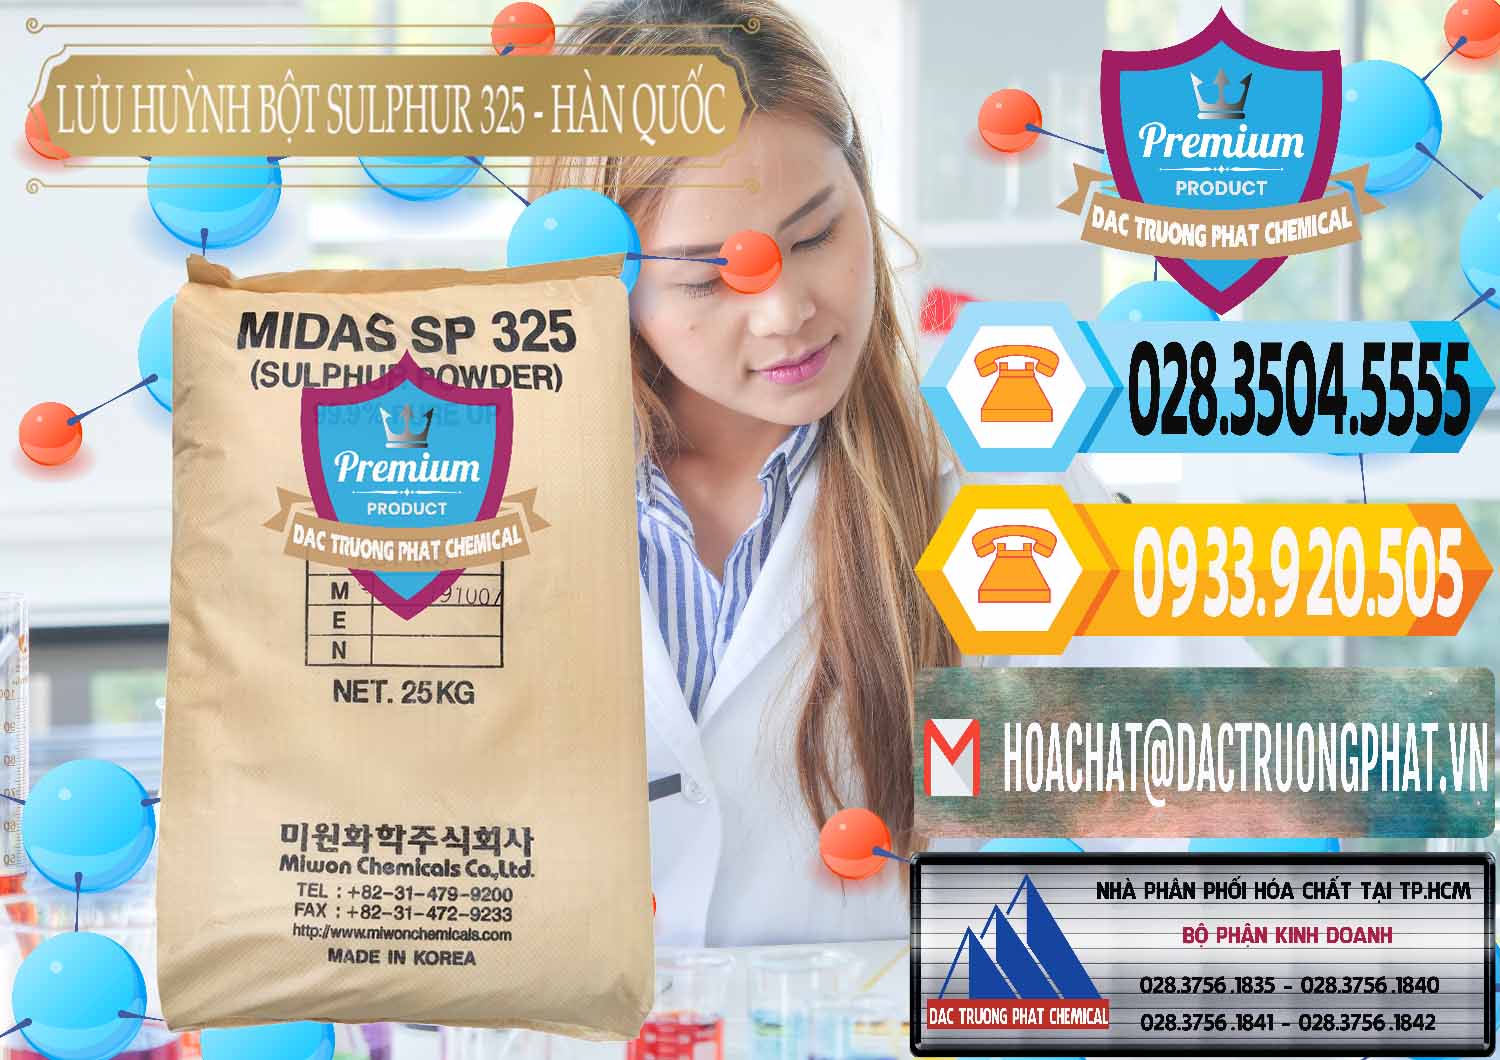 Công ty chuyên bán _ cung cấp Lưu huỳnh Bột - Sulfur Powder Midas SP 325 Hàn Quốc Korea - 0198 - Đơn vị chuyên cung cấp & kinh doanh hóa chất tại TP.HCM - hoachattayrua.net